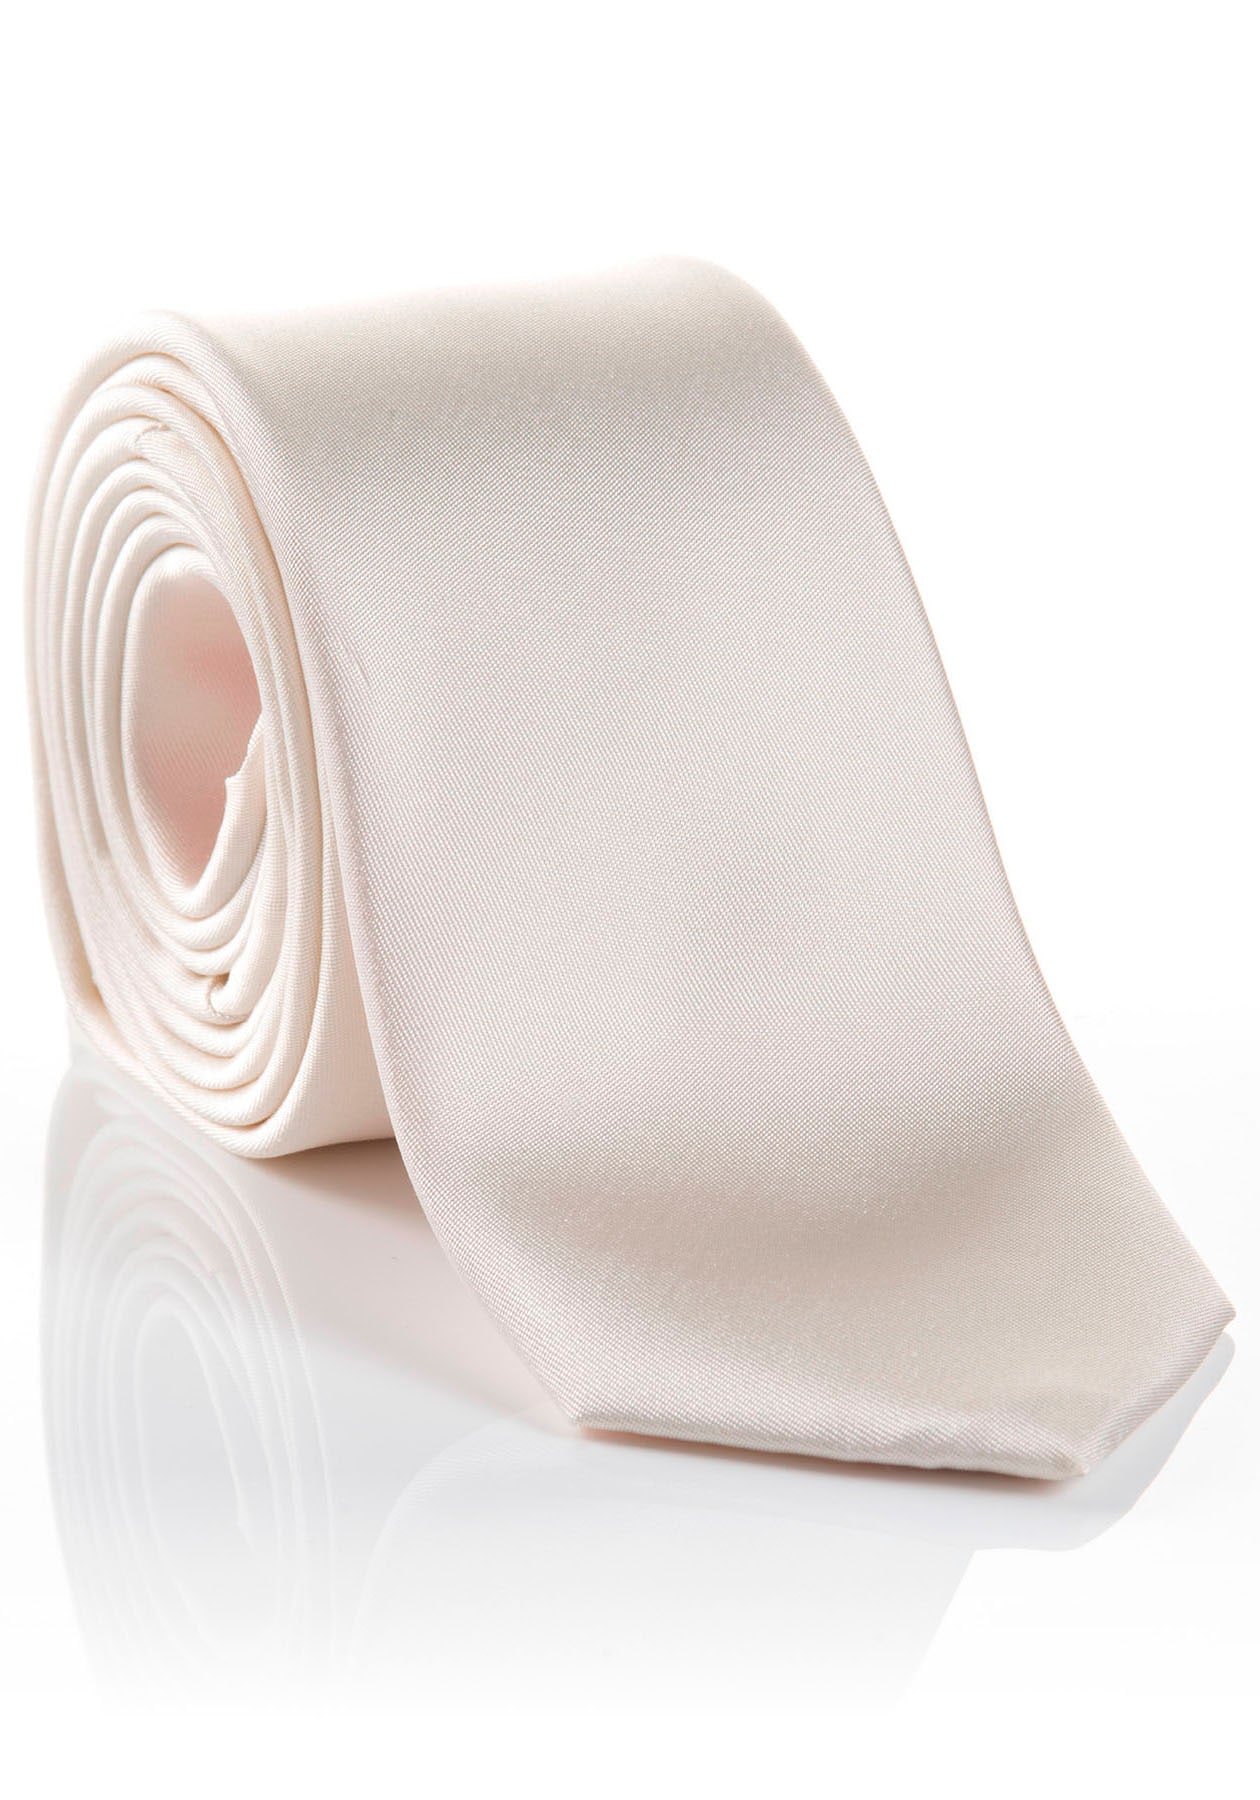 MONTI Krawatte »LIVIO«, Seidenkrawatte | hohem Hochwertig kaufen UNIVERSAL Tragekomfort verarbeitete mit